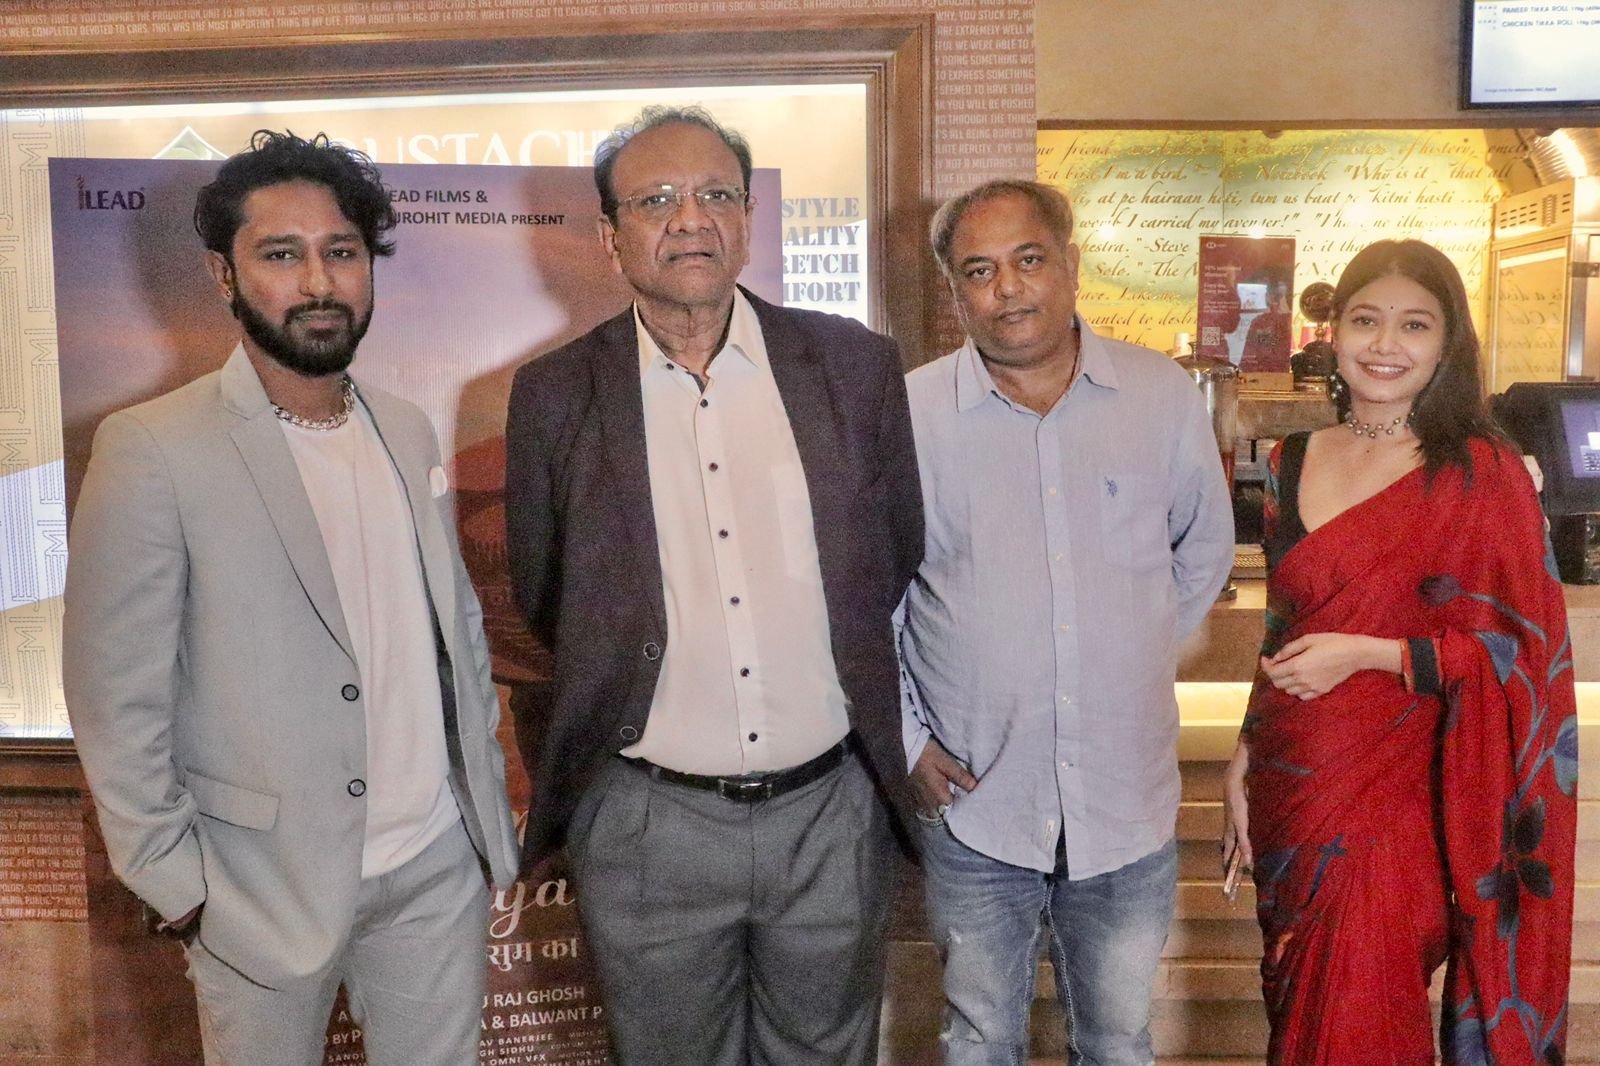 Premiere of upcoming Bollywood film Kusum Ka Biyaah held at City of Joy, Kolkata